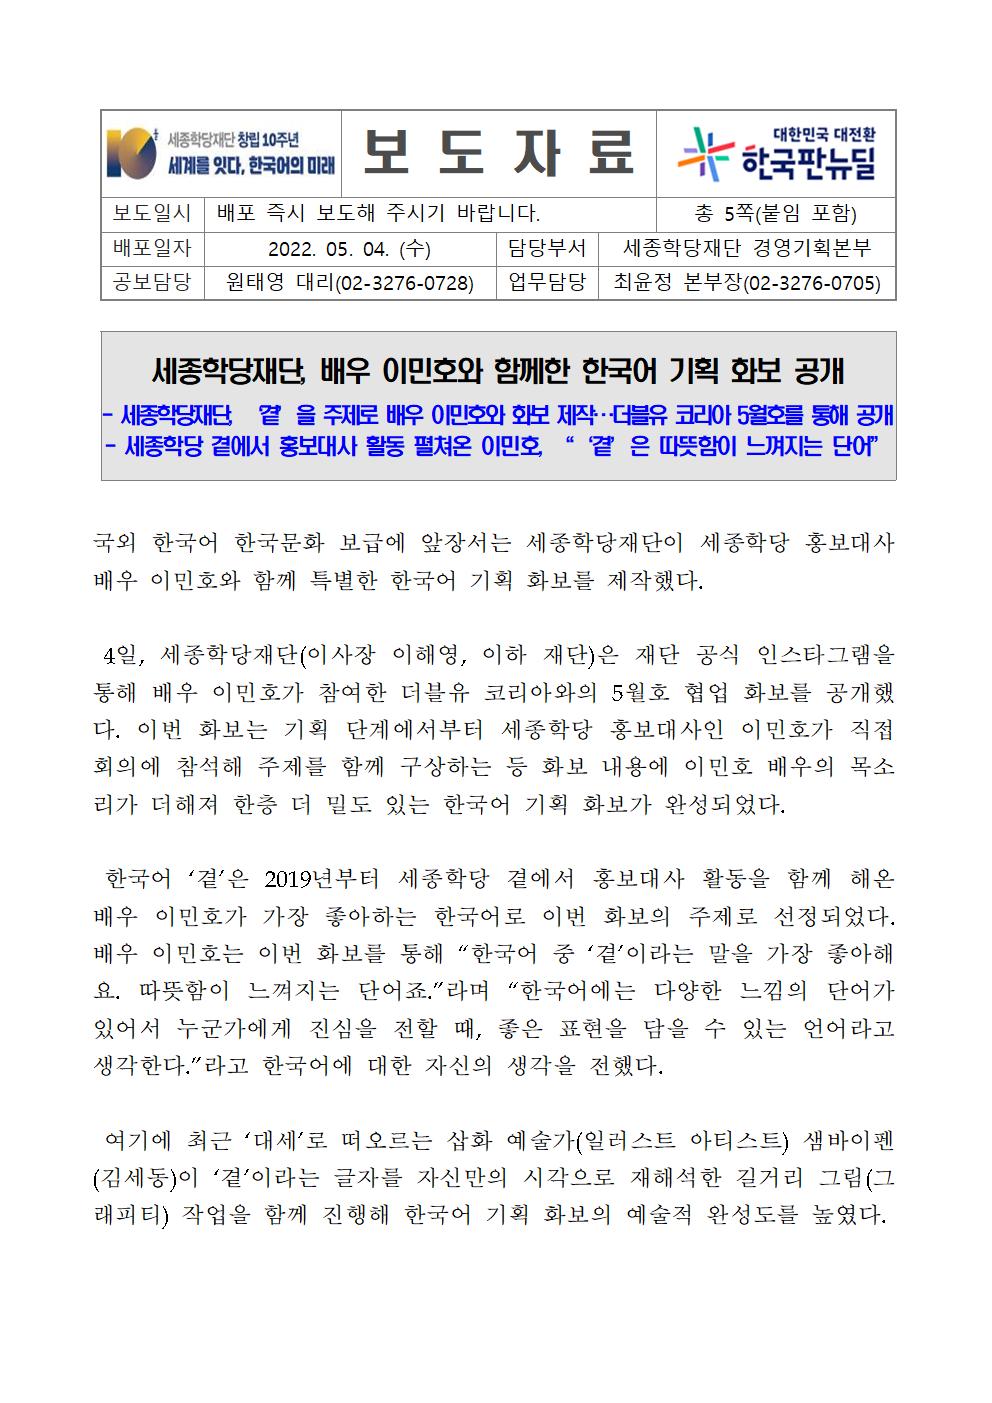 세종학당재단 배우 이민호와 함께한 한국어 기획 화보 공개_001